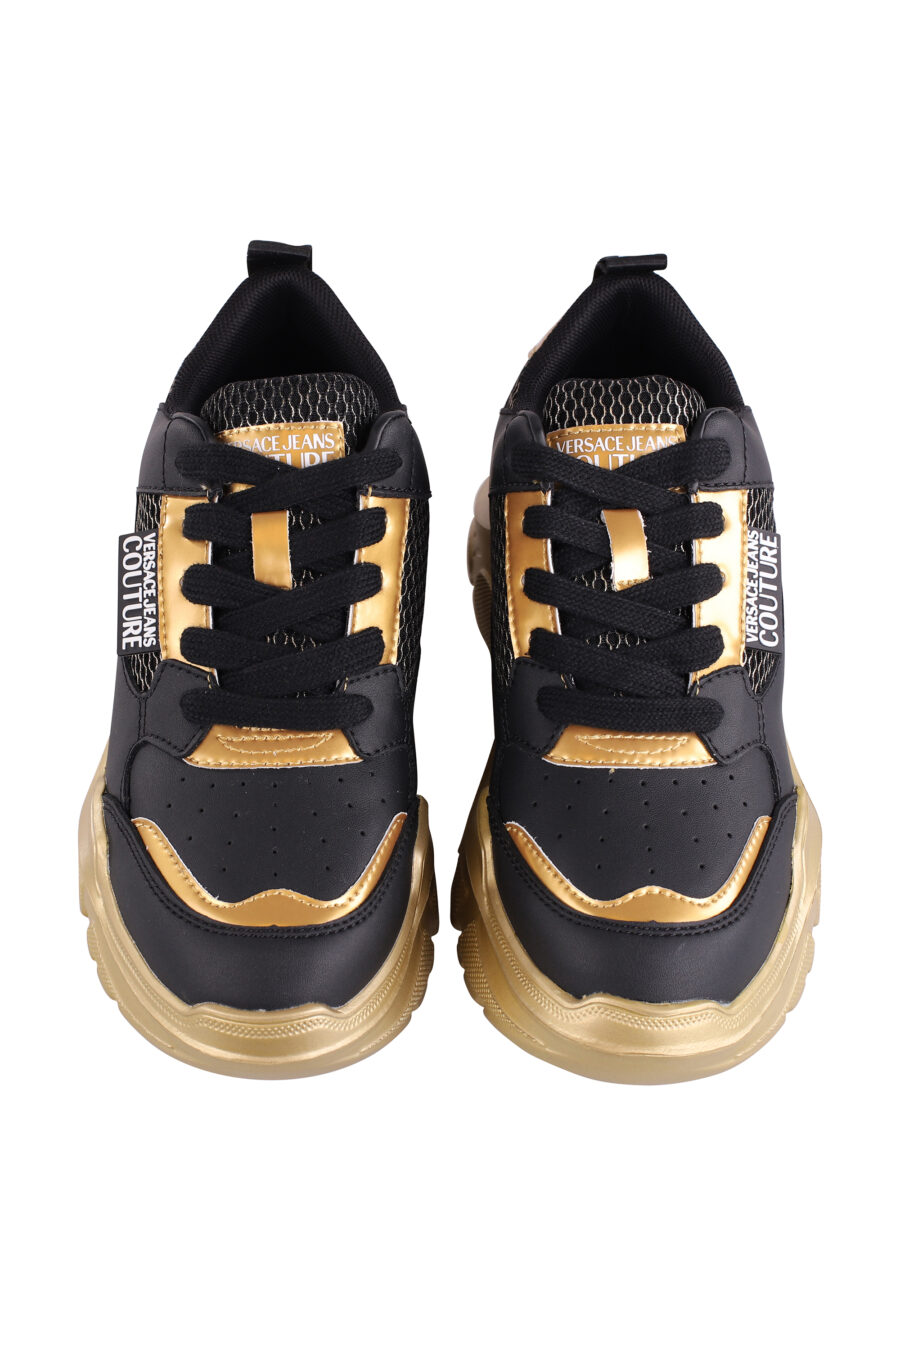 Zapatillas negras con dorado y plataforma - IMG 9111